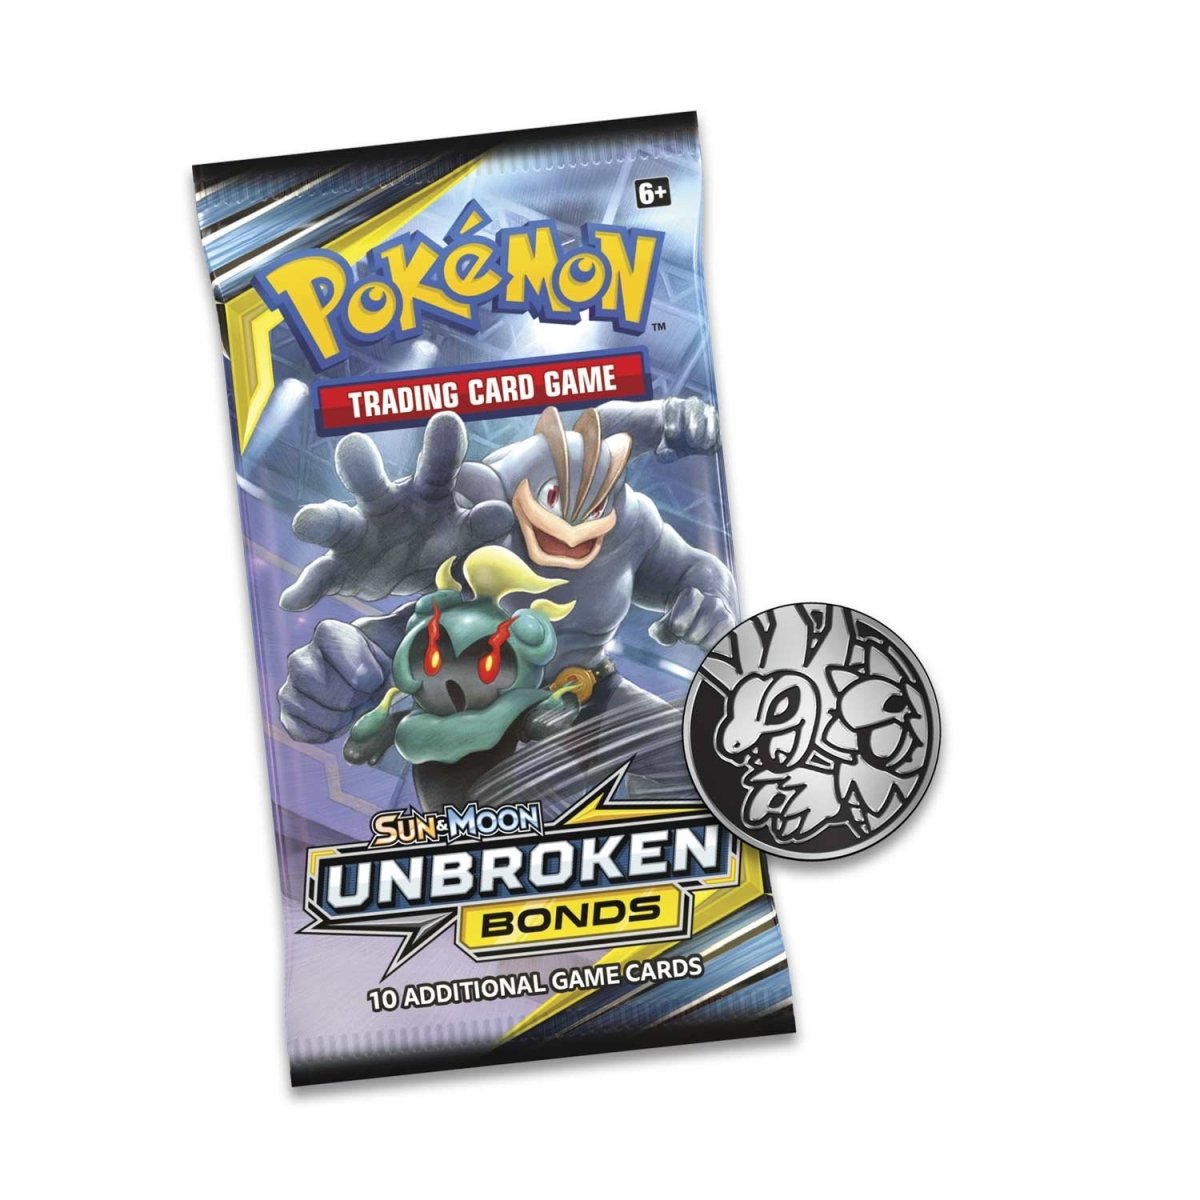 Pokémon TCG: Sun & Moon-Unbroken Bonds 3 Booster Packs, Coin